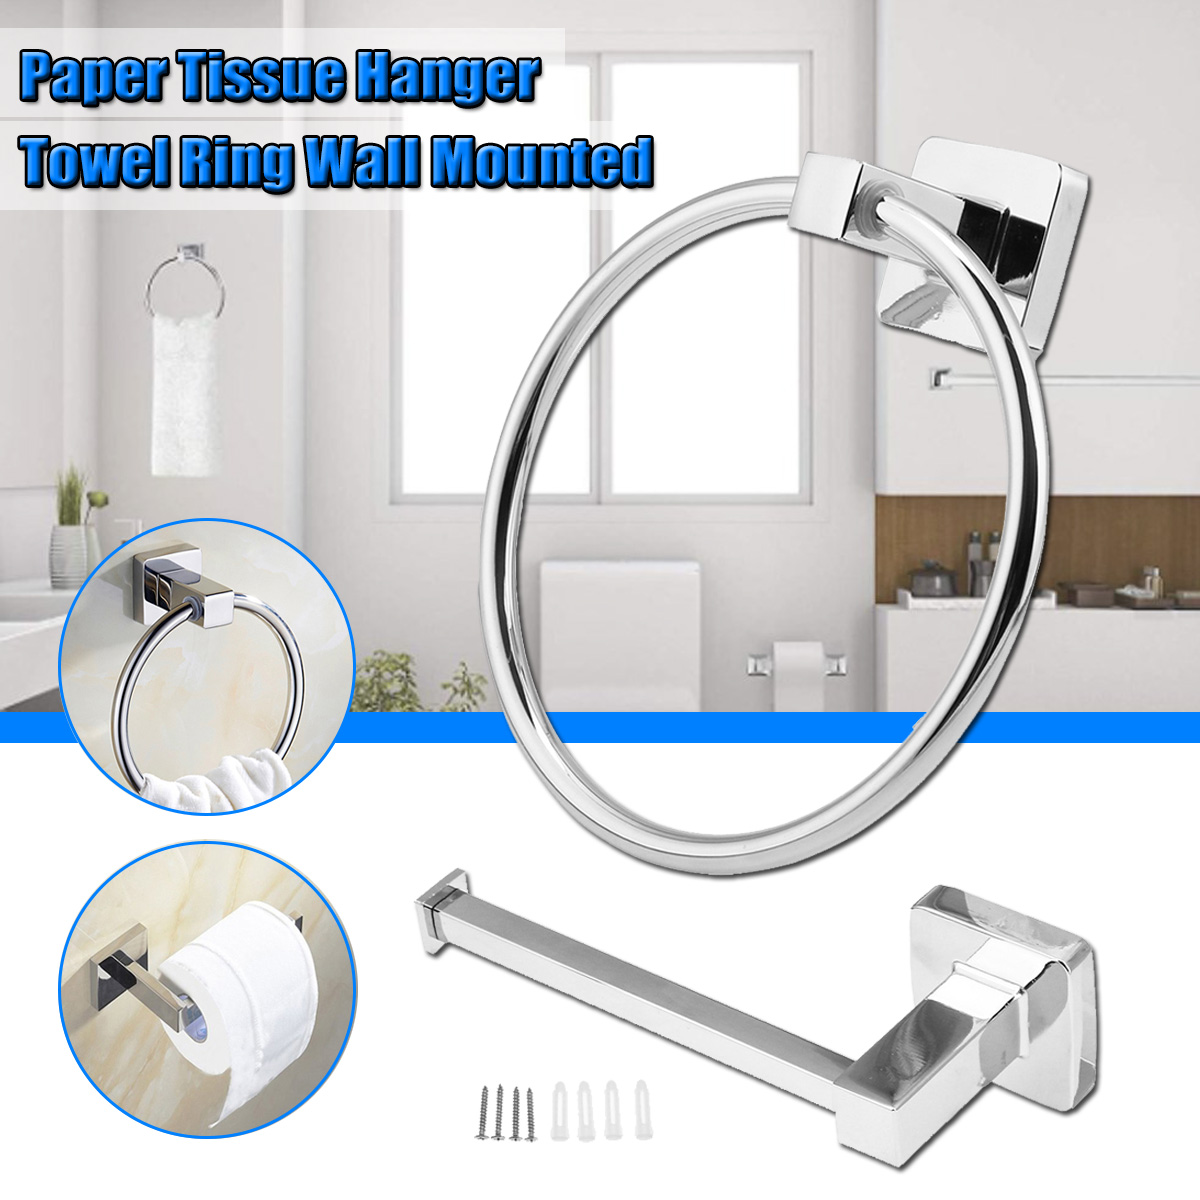 Stainless-Steel-Paper-Tissue-Holder-Rack-Hanger-Towel-Ring-Wall-Mounted-Shelf-1726325-1